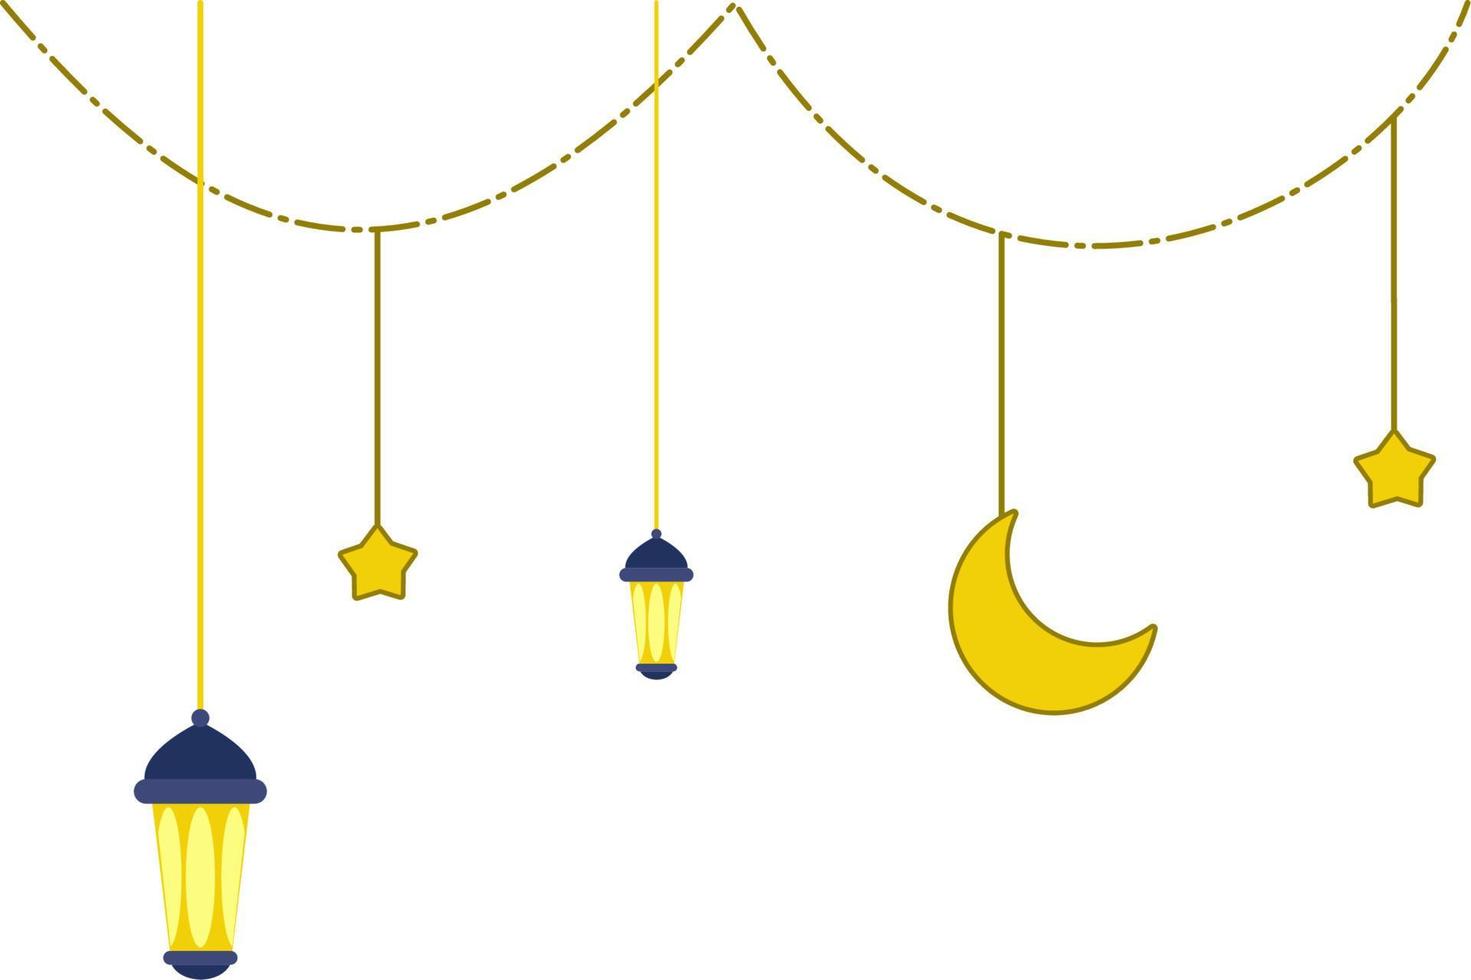 hängende laterne ramadan dekoration vektor